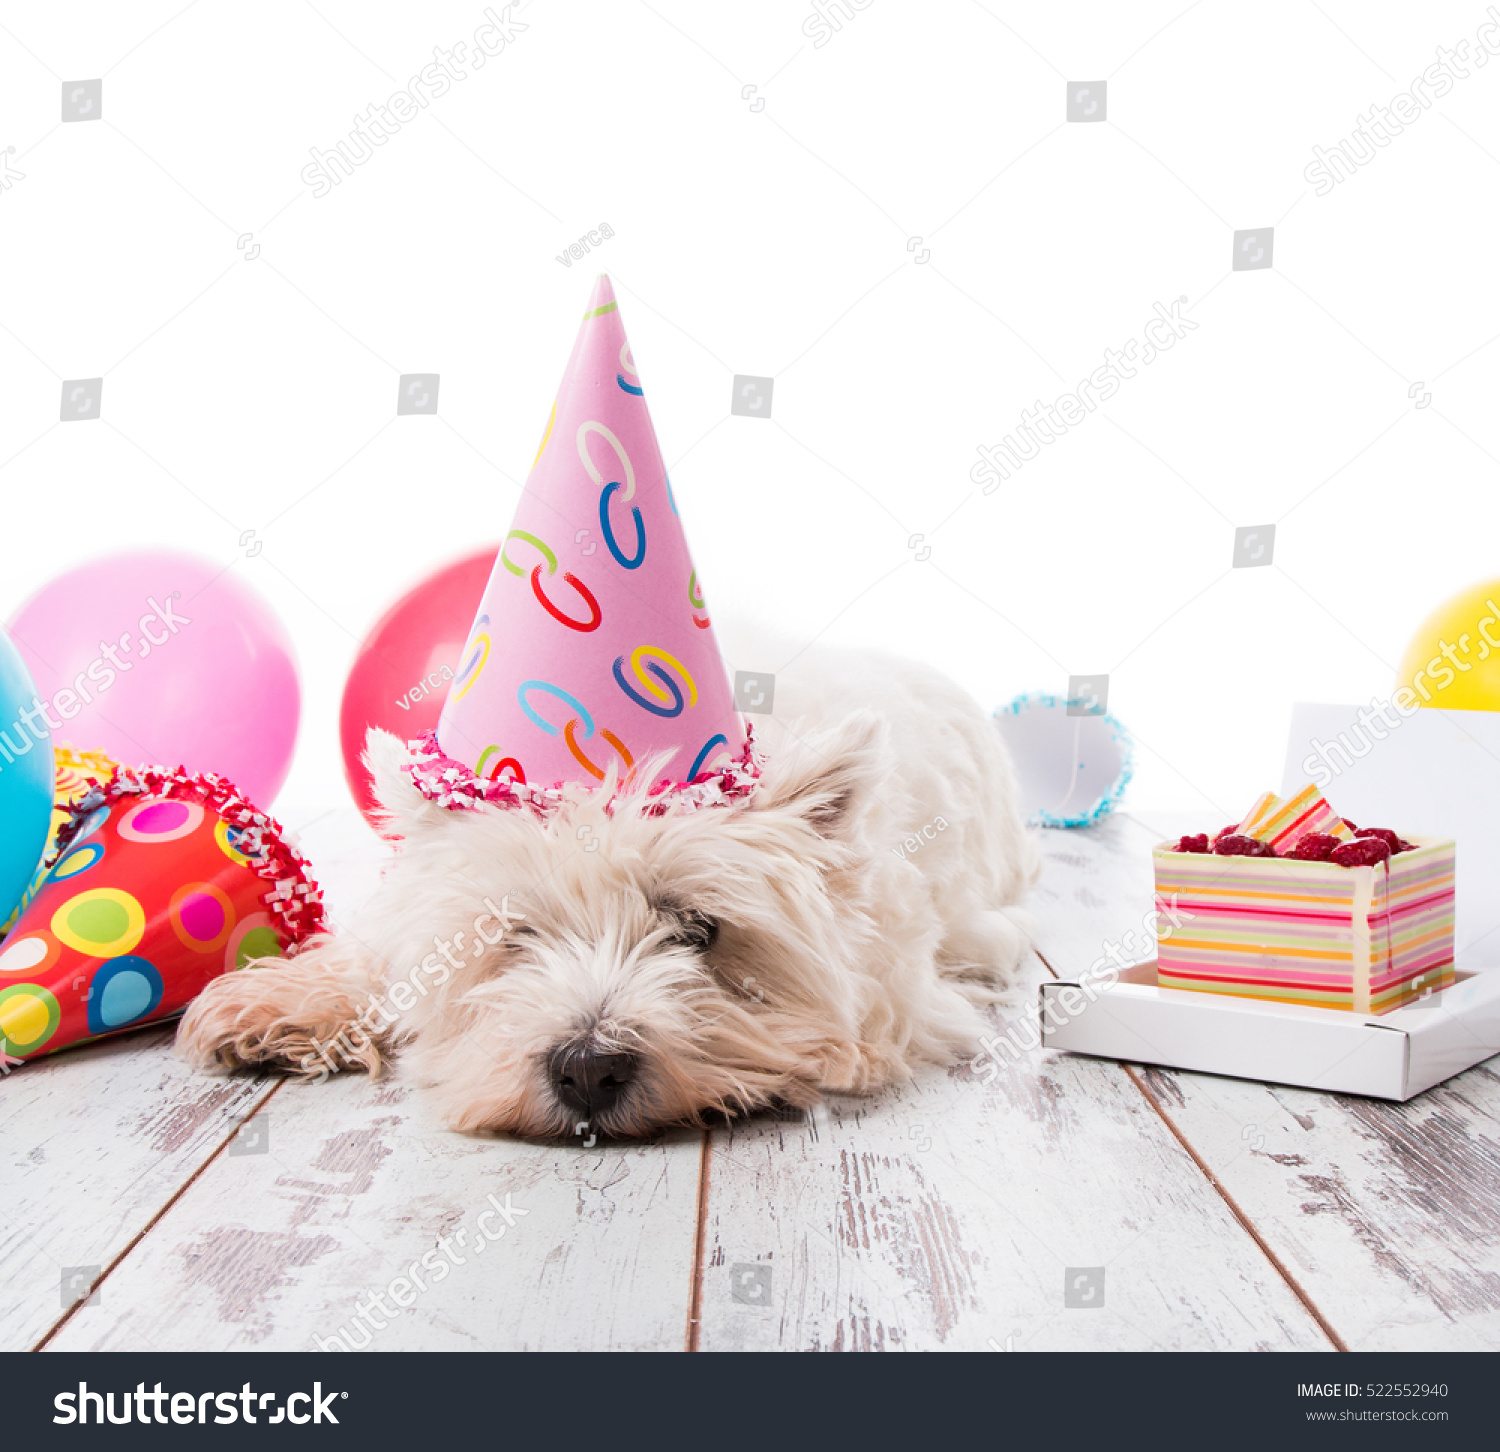 happy birthday terrier